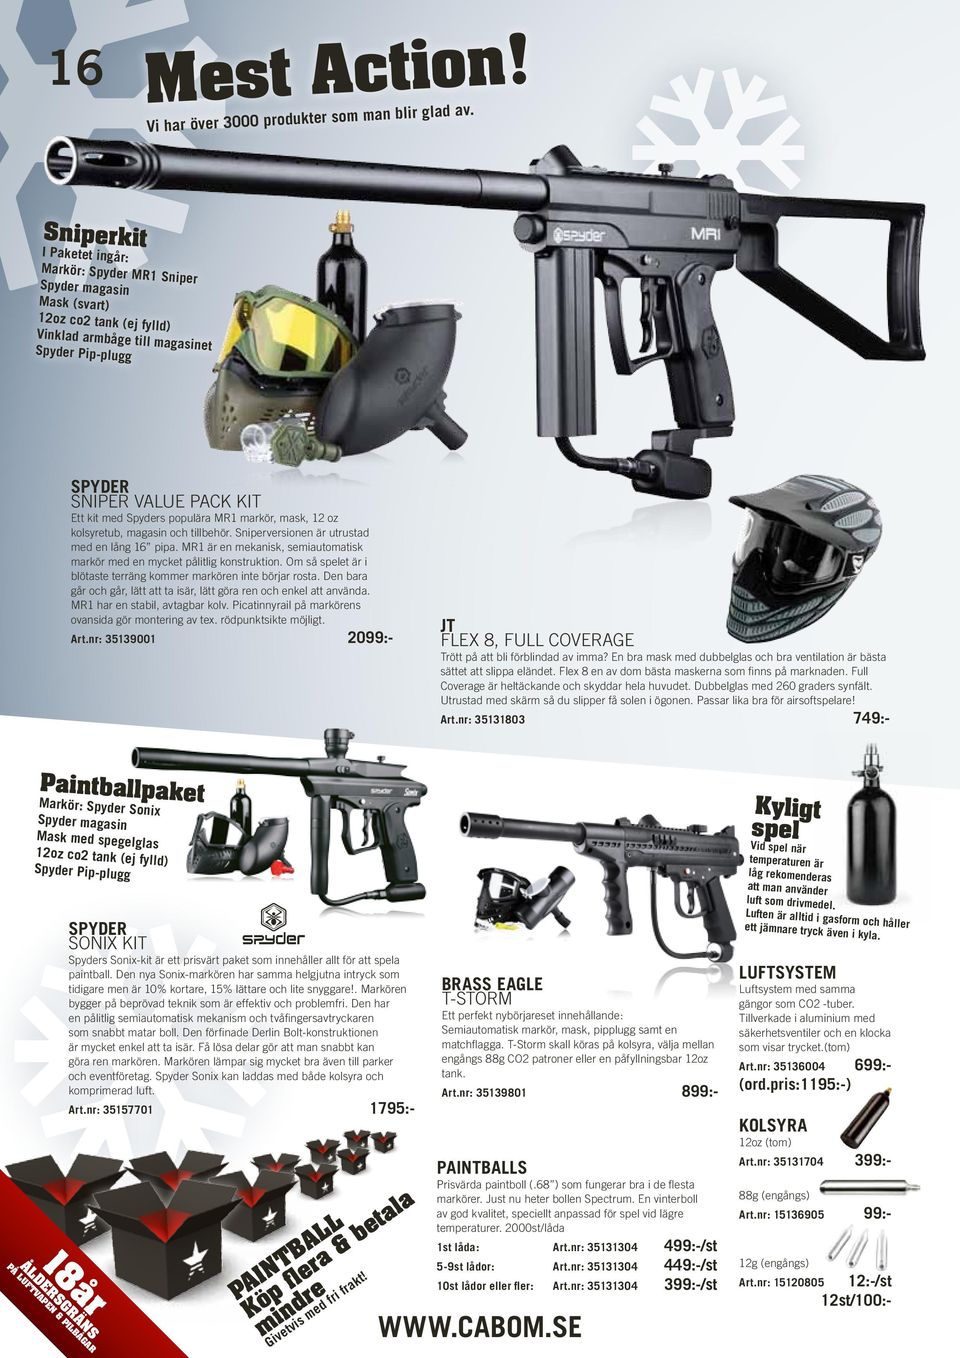 Spyders populära MR1 markör, mask, 12 oz kolsyretub, magasin och tillbehör. Sniperversionen är utrustad med en lång 16 pipa.